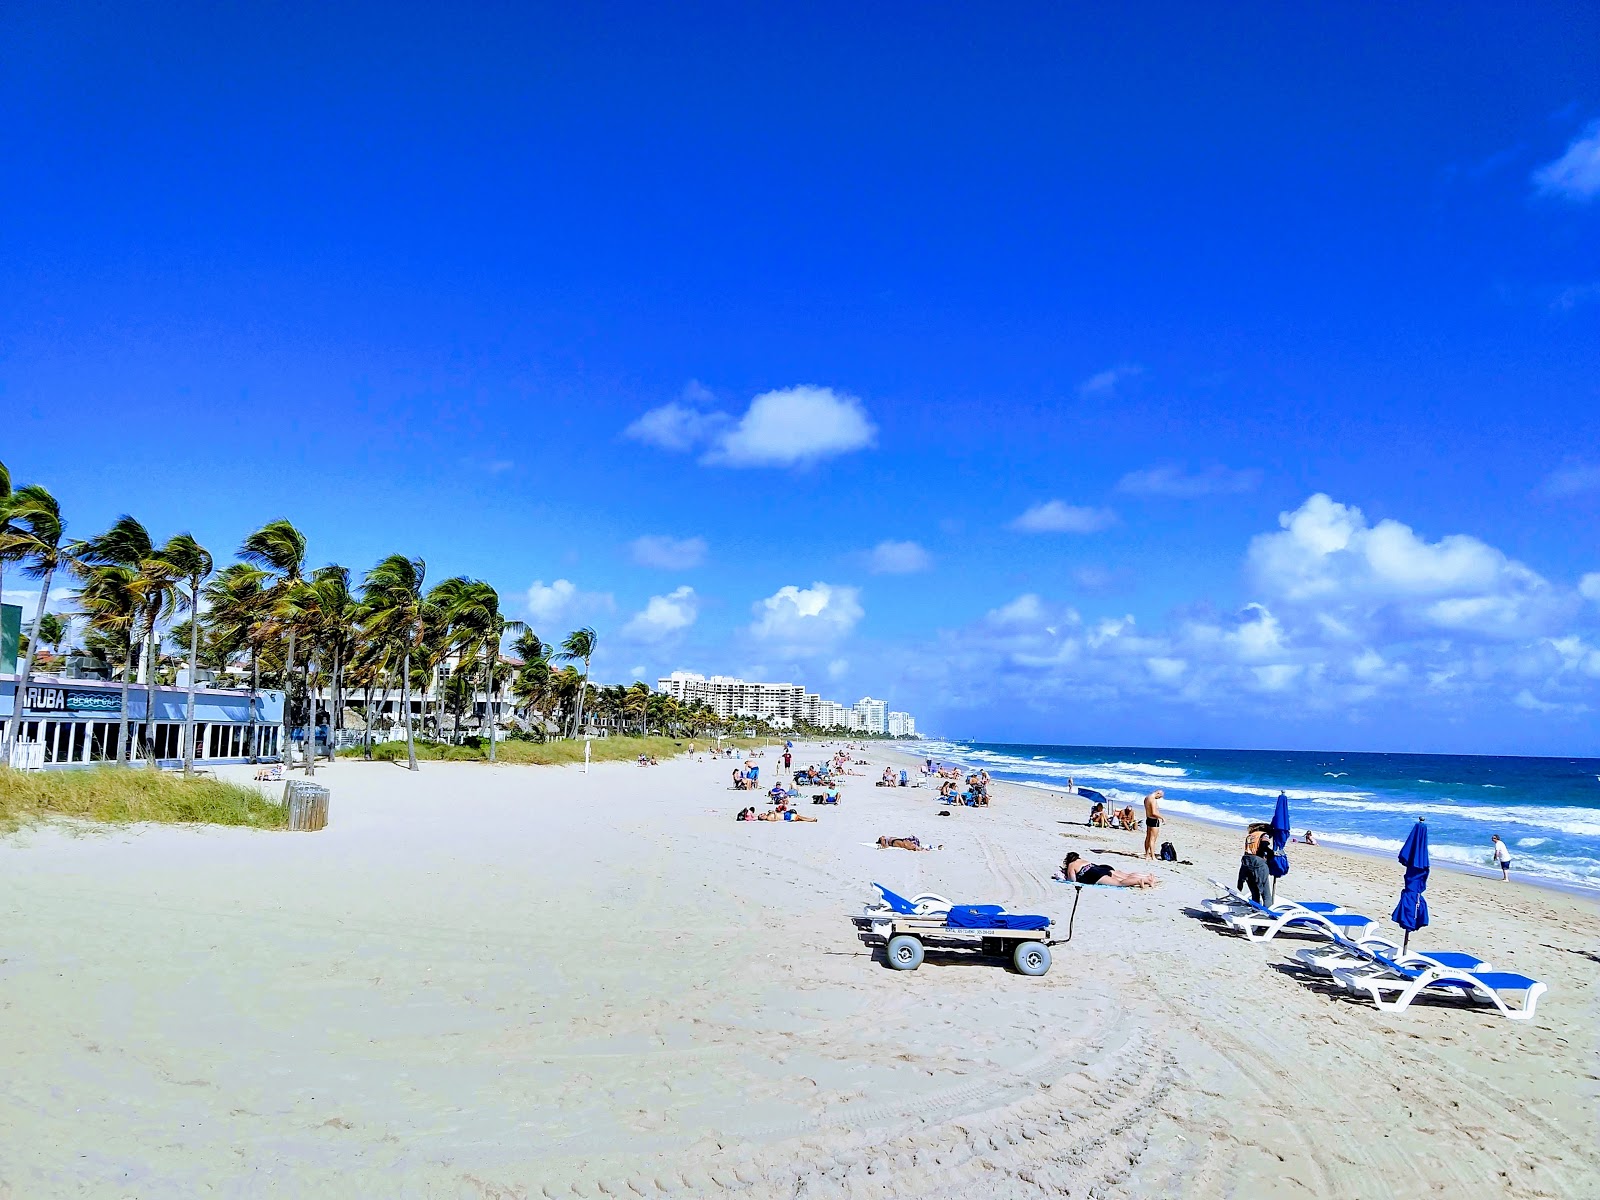 Fotografie cu Fort Lauderdale beach cu o suprafață de nisip strălucitor